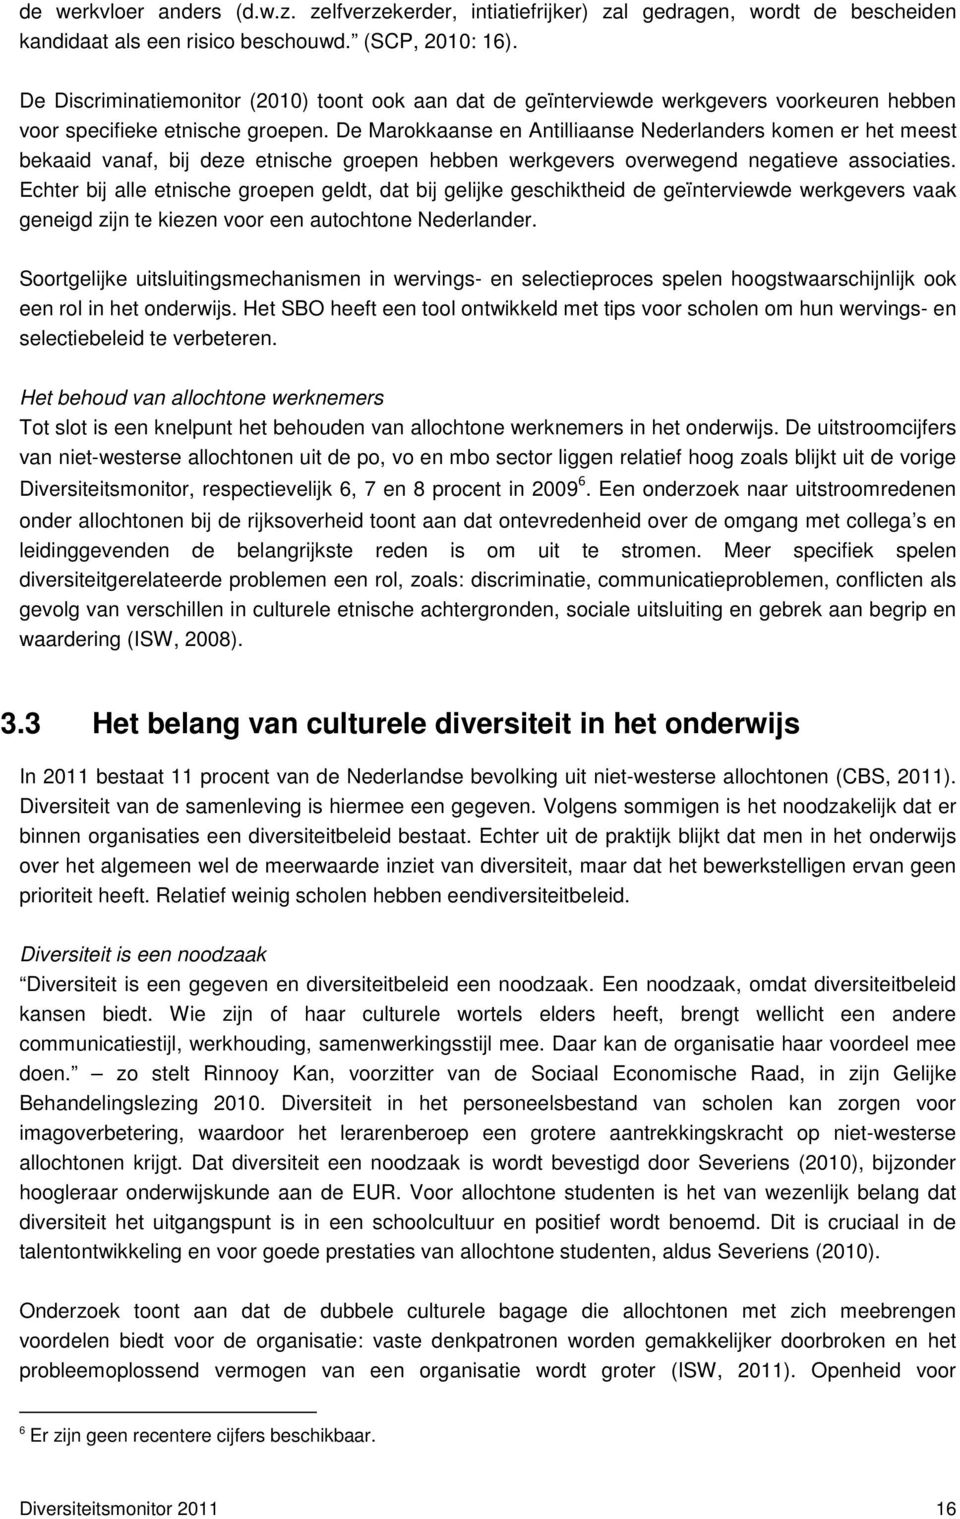 De Marokkaanse en Antilliaanse Nederlanders komen er het meest bekaaid vanaf, bij deze etnische groepen hebben werkgevers overwegend negatieve associaties.